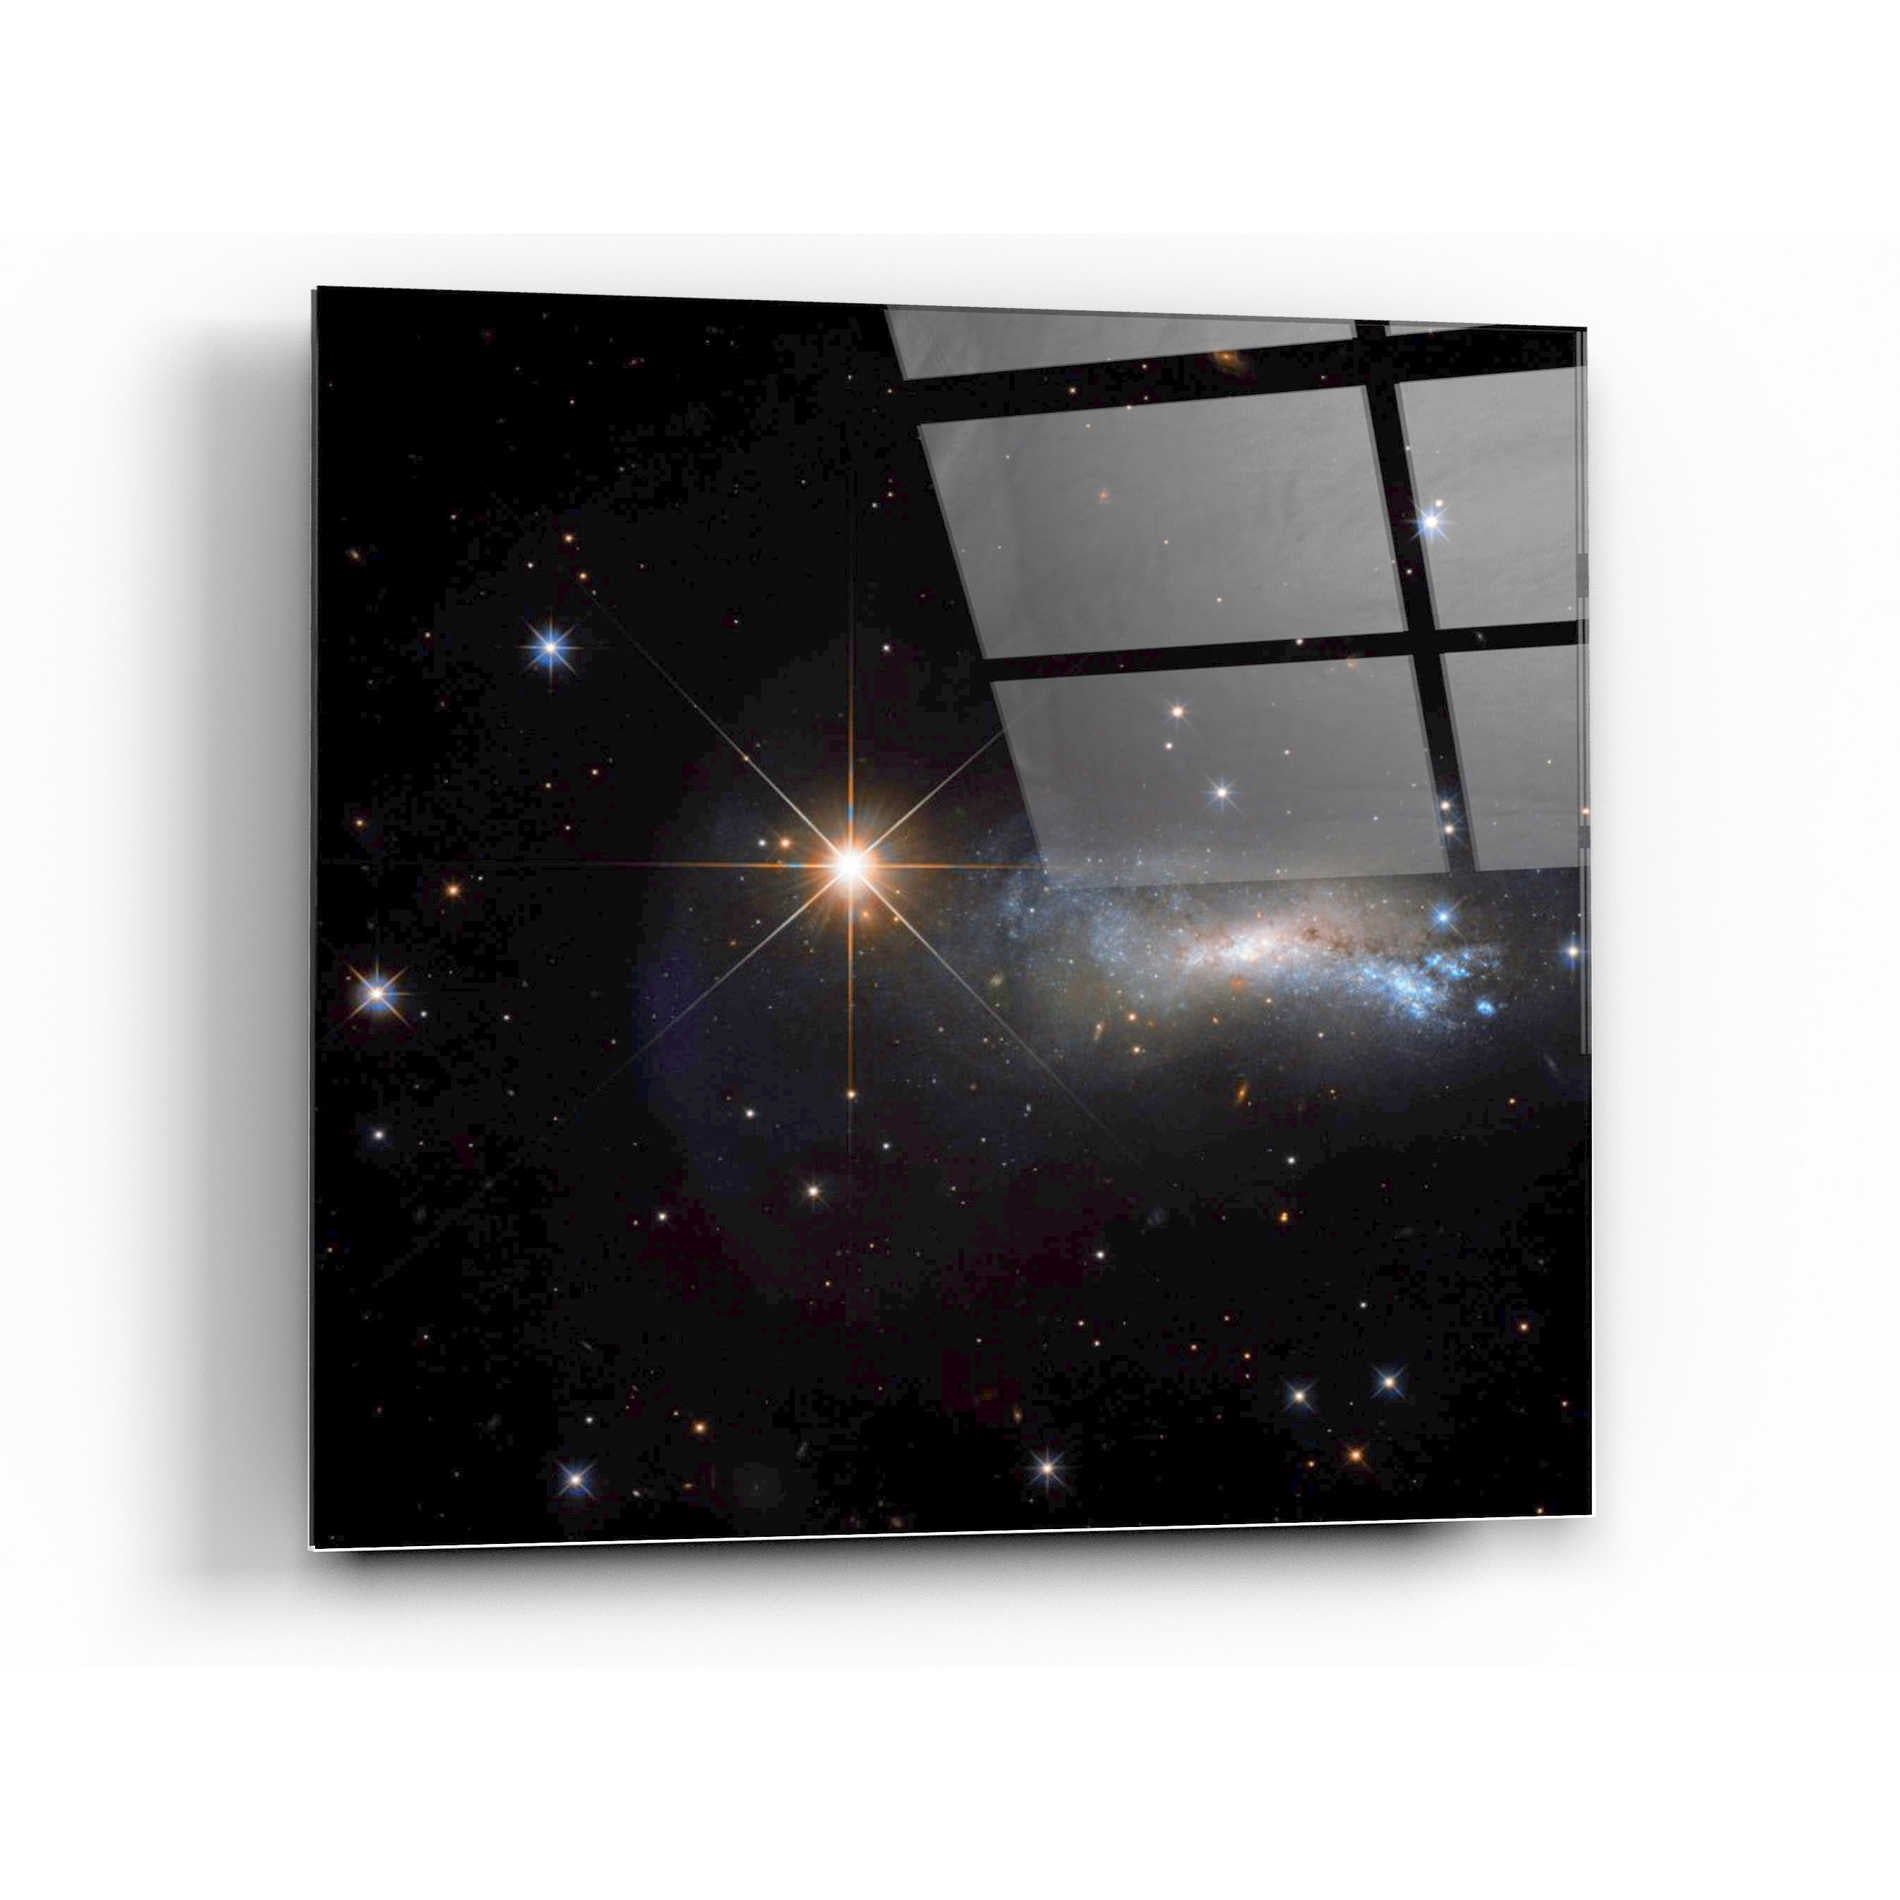 Epic Art "Outshine" Hubble Space Telescope Acrylic Glass Wall Art